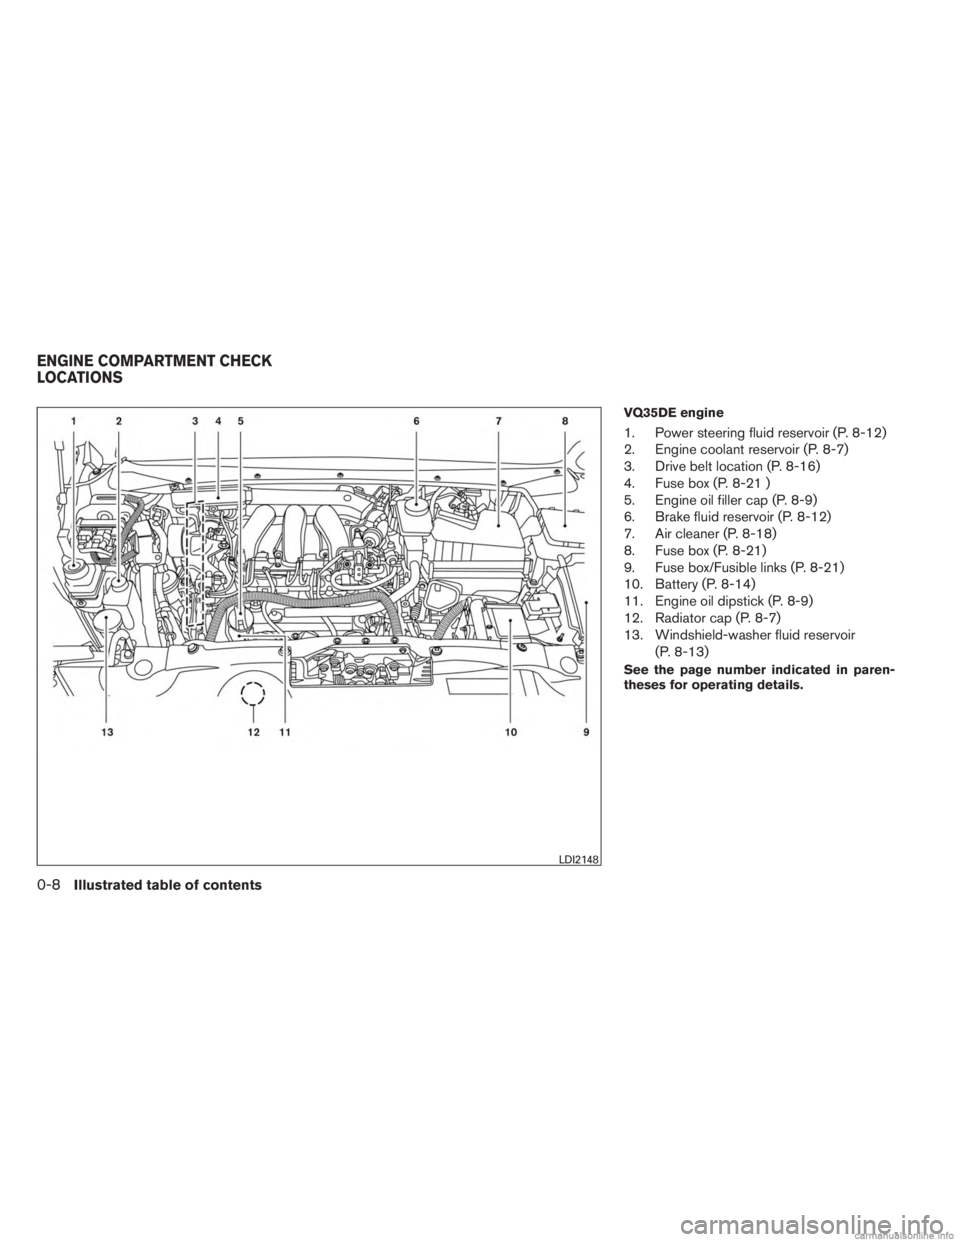 INFINITI JX 2013  Owners Manual VQ35DE engine
1. Power steering fluid reservoir (P. 8-12)
2. Engine coolant reservoir (P. 8-7)
3. Drive belt location (P. 8-16)
4. Fuse box (P. 8-21 )
5. Engine oil filler cap (P. 8-9)
6. Brake fluid 